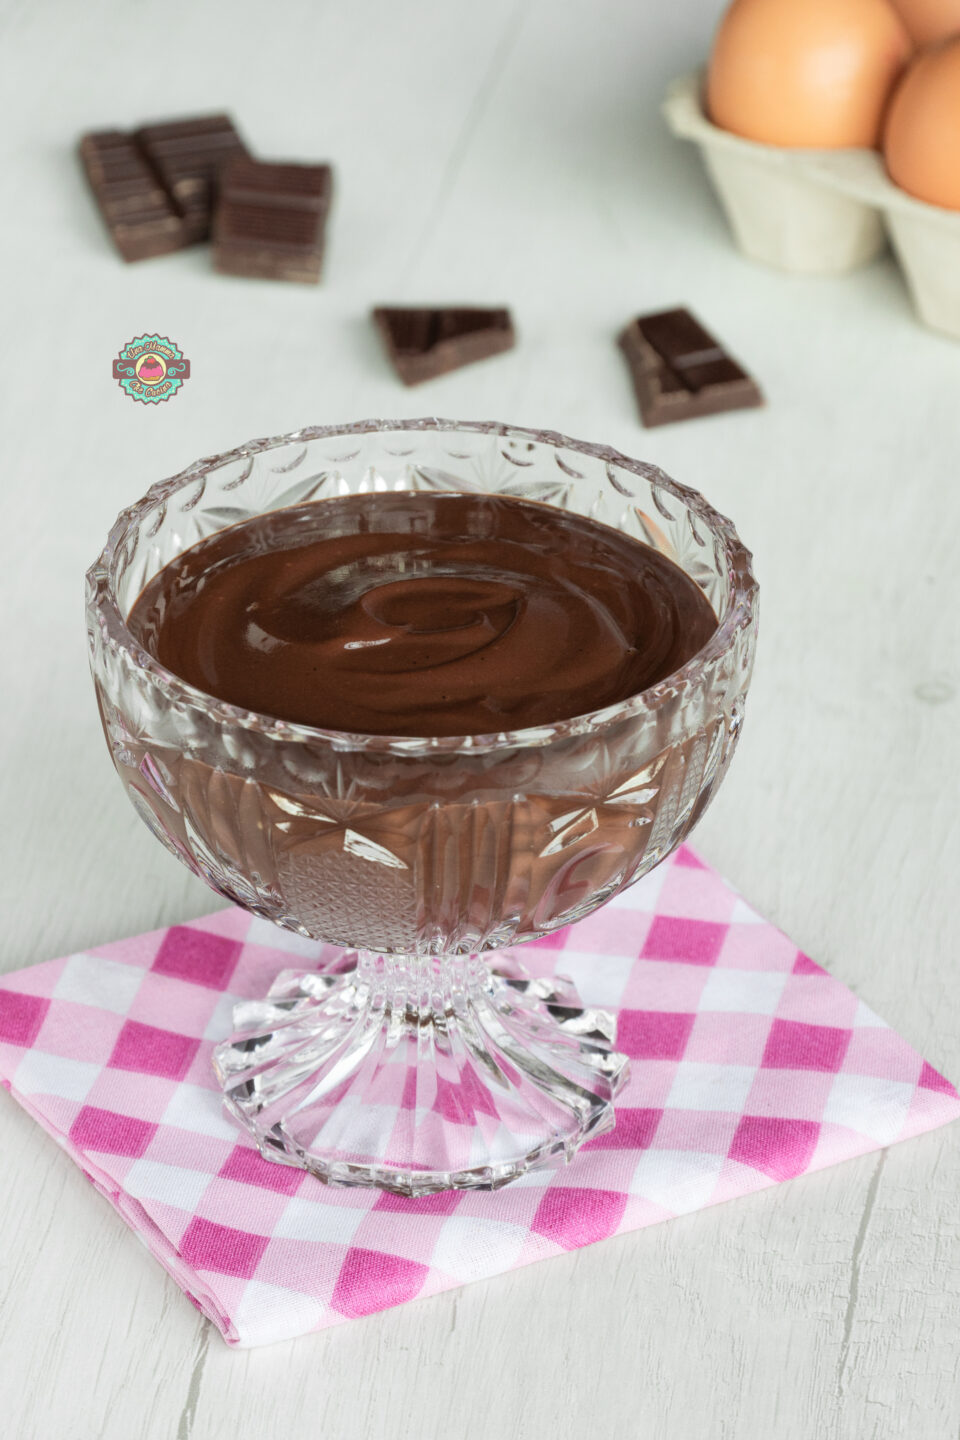 Crema pasticcera al cioccolato - ricetta facile